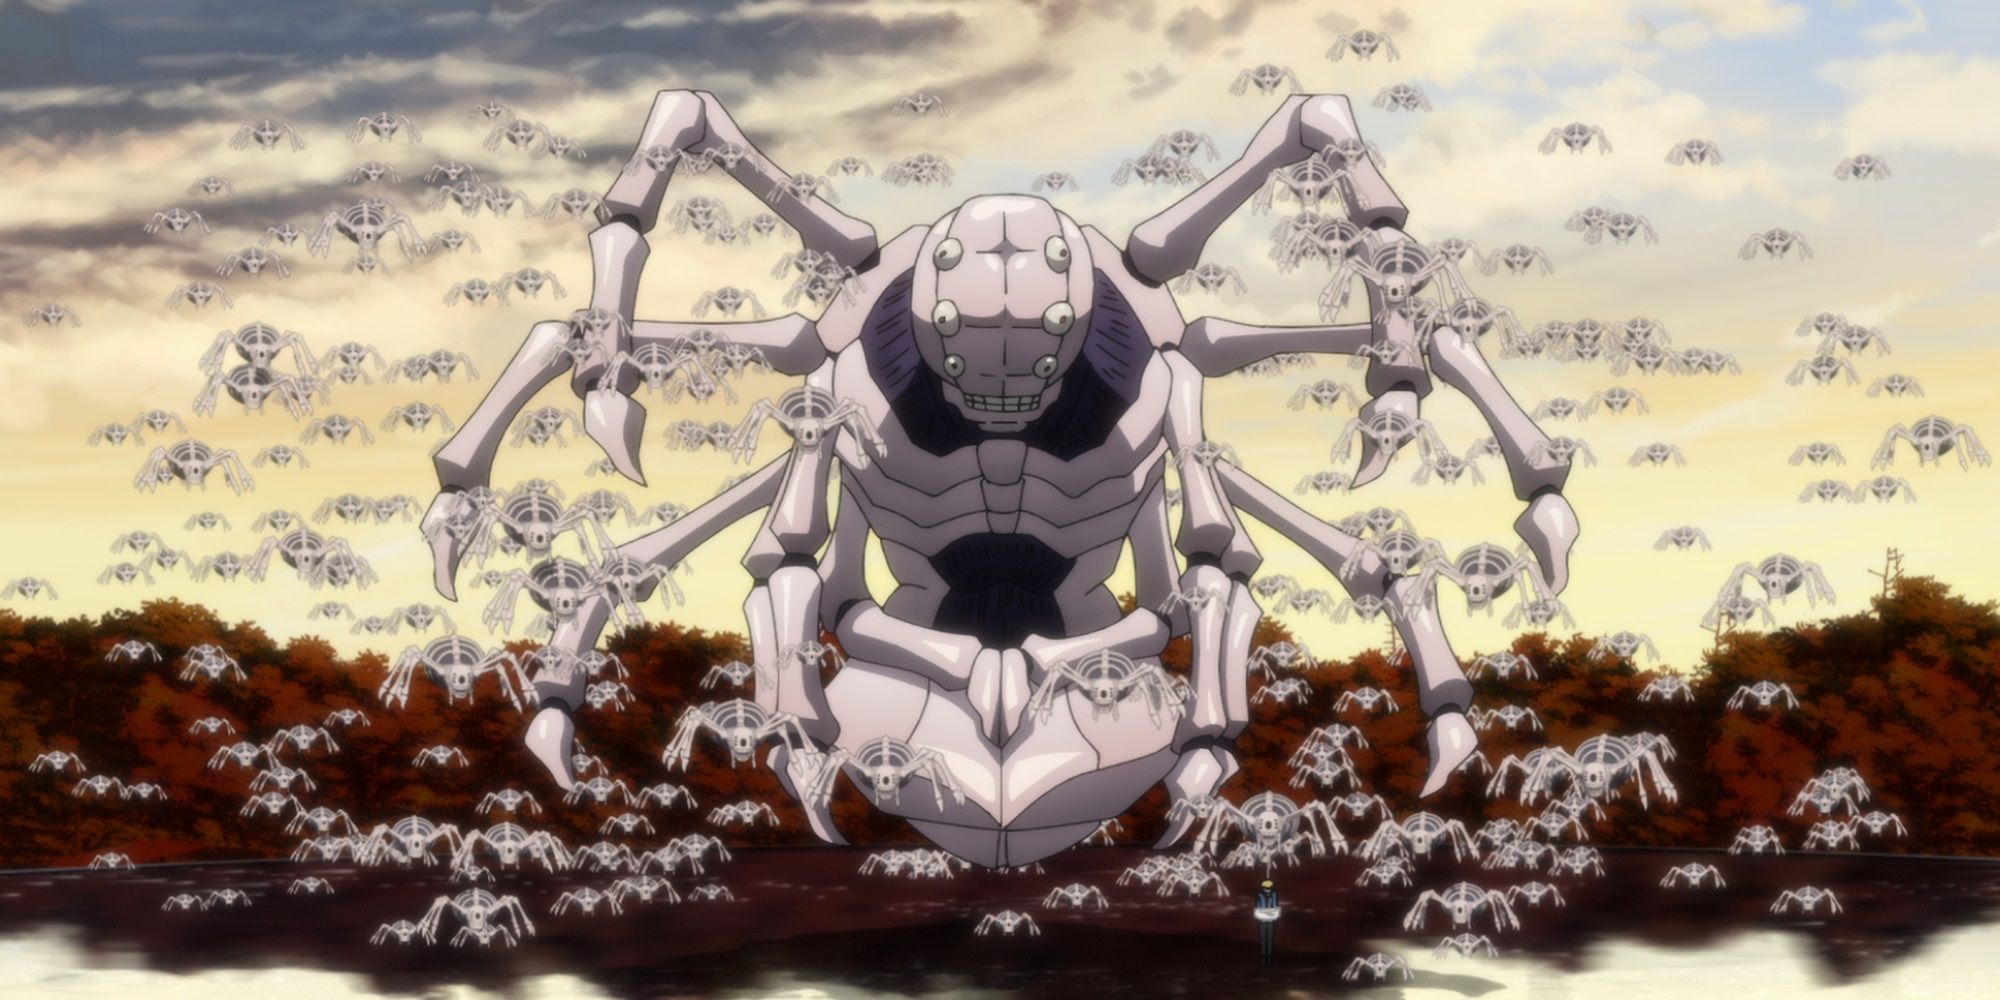 Captura de tela do episódio 20 de Undead Unluck representando Autumn cercada por uma horda de outros pequenos insetos.